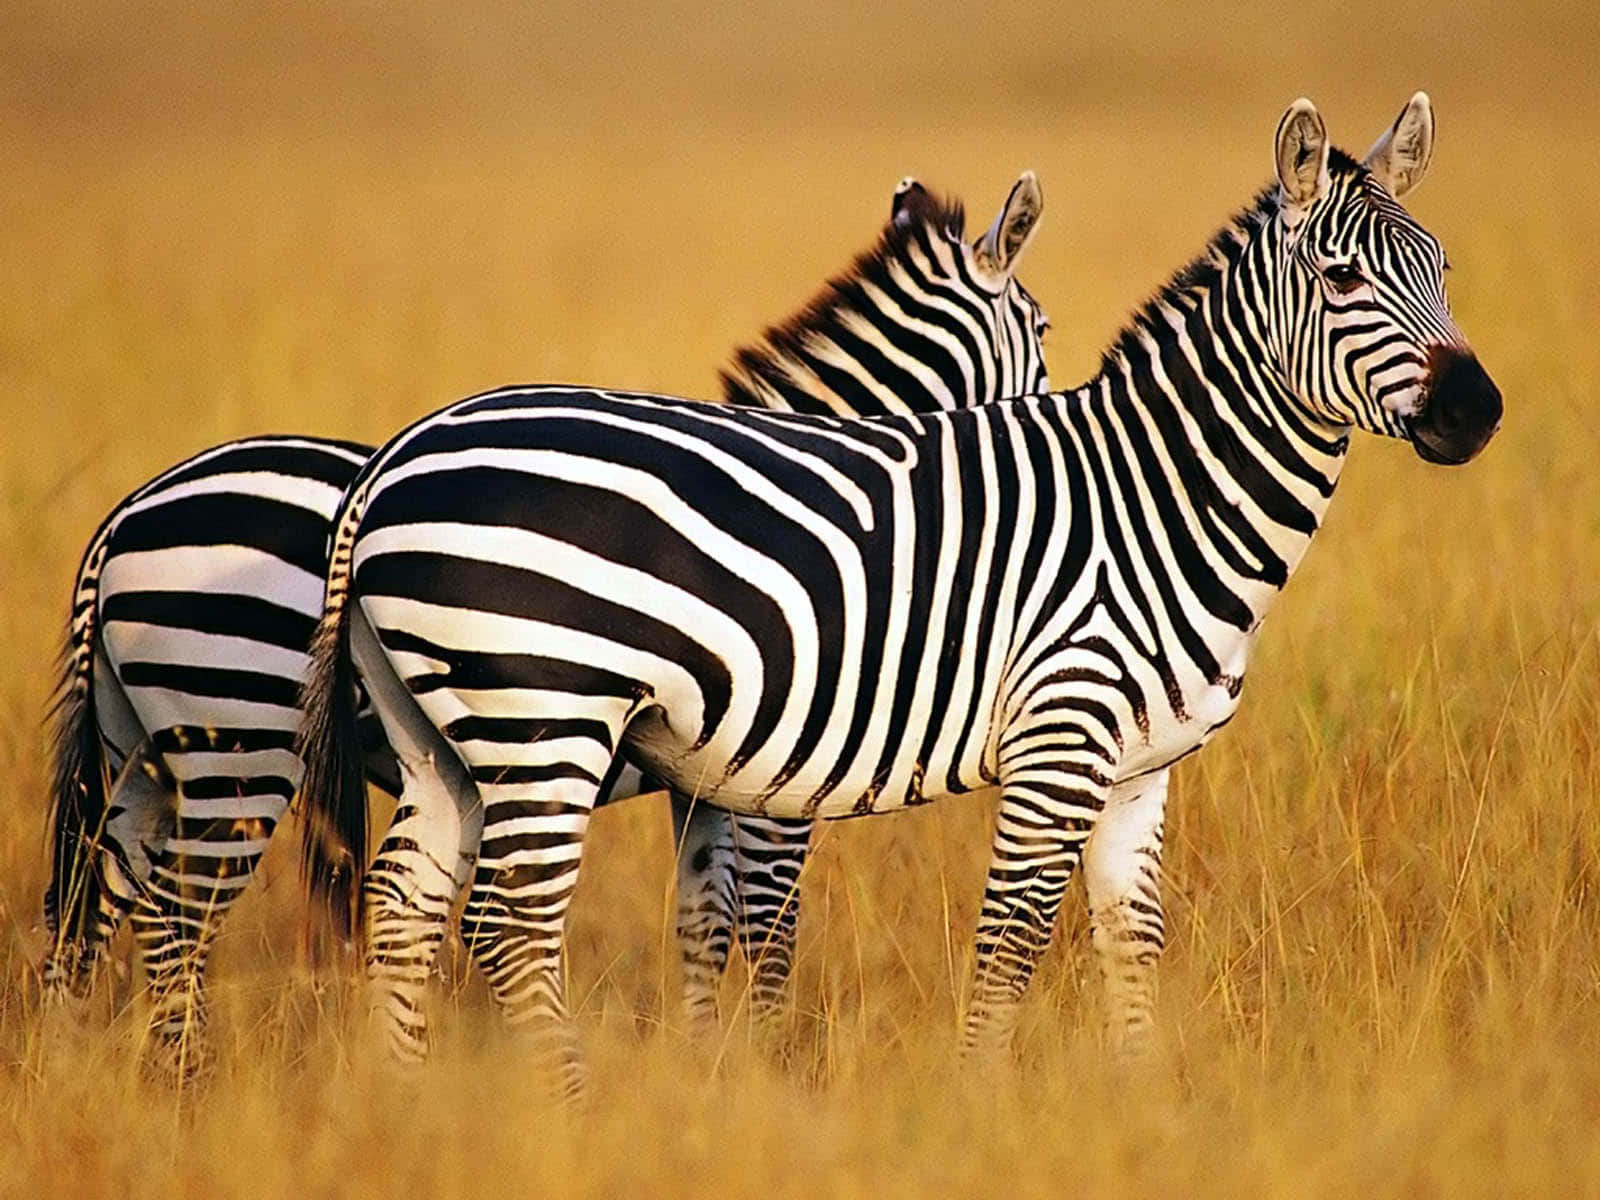 Unbranco Di Zebre Radunate Nella Savana